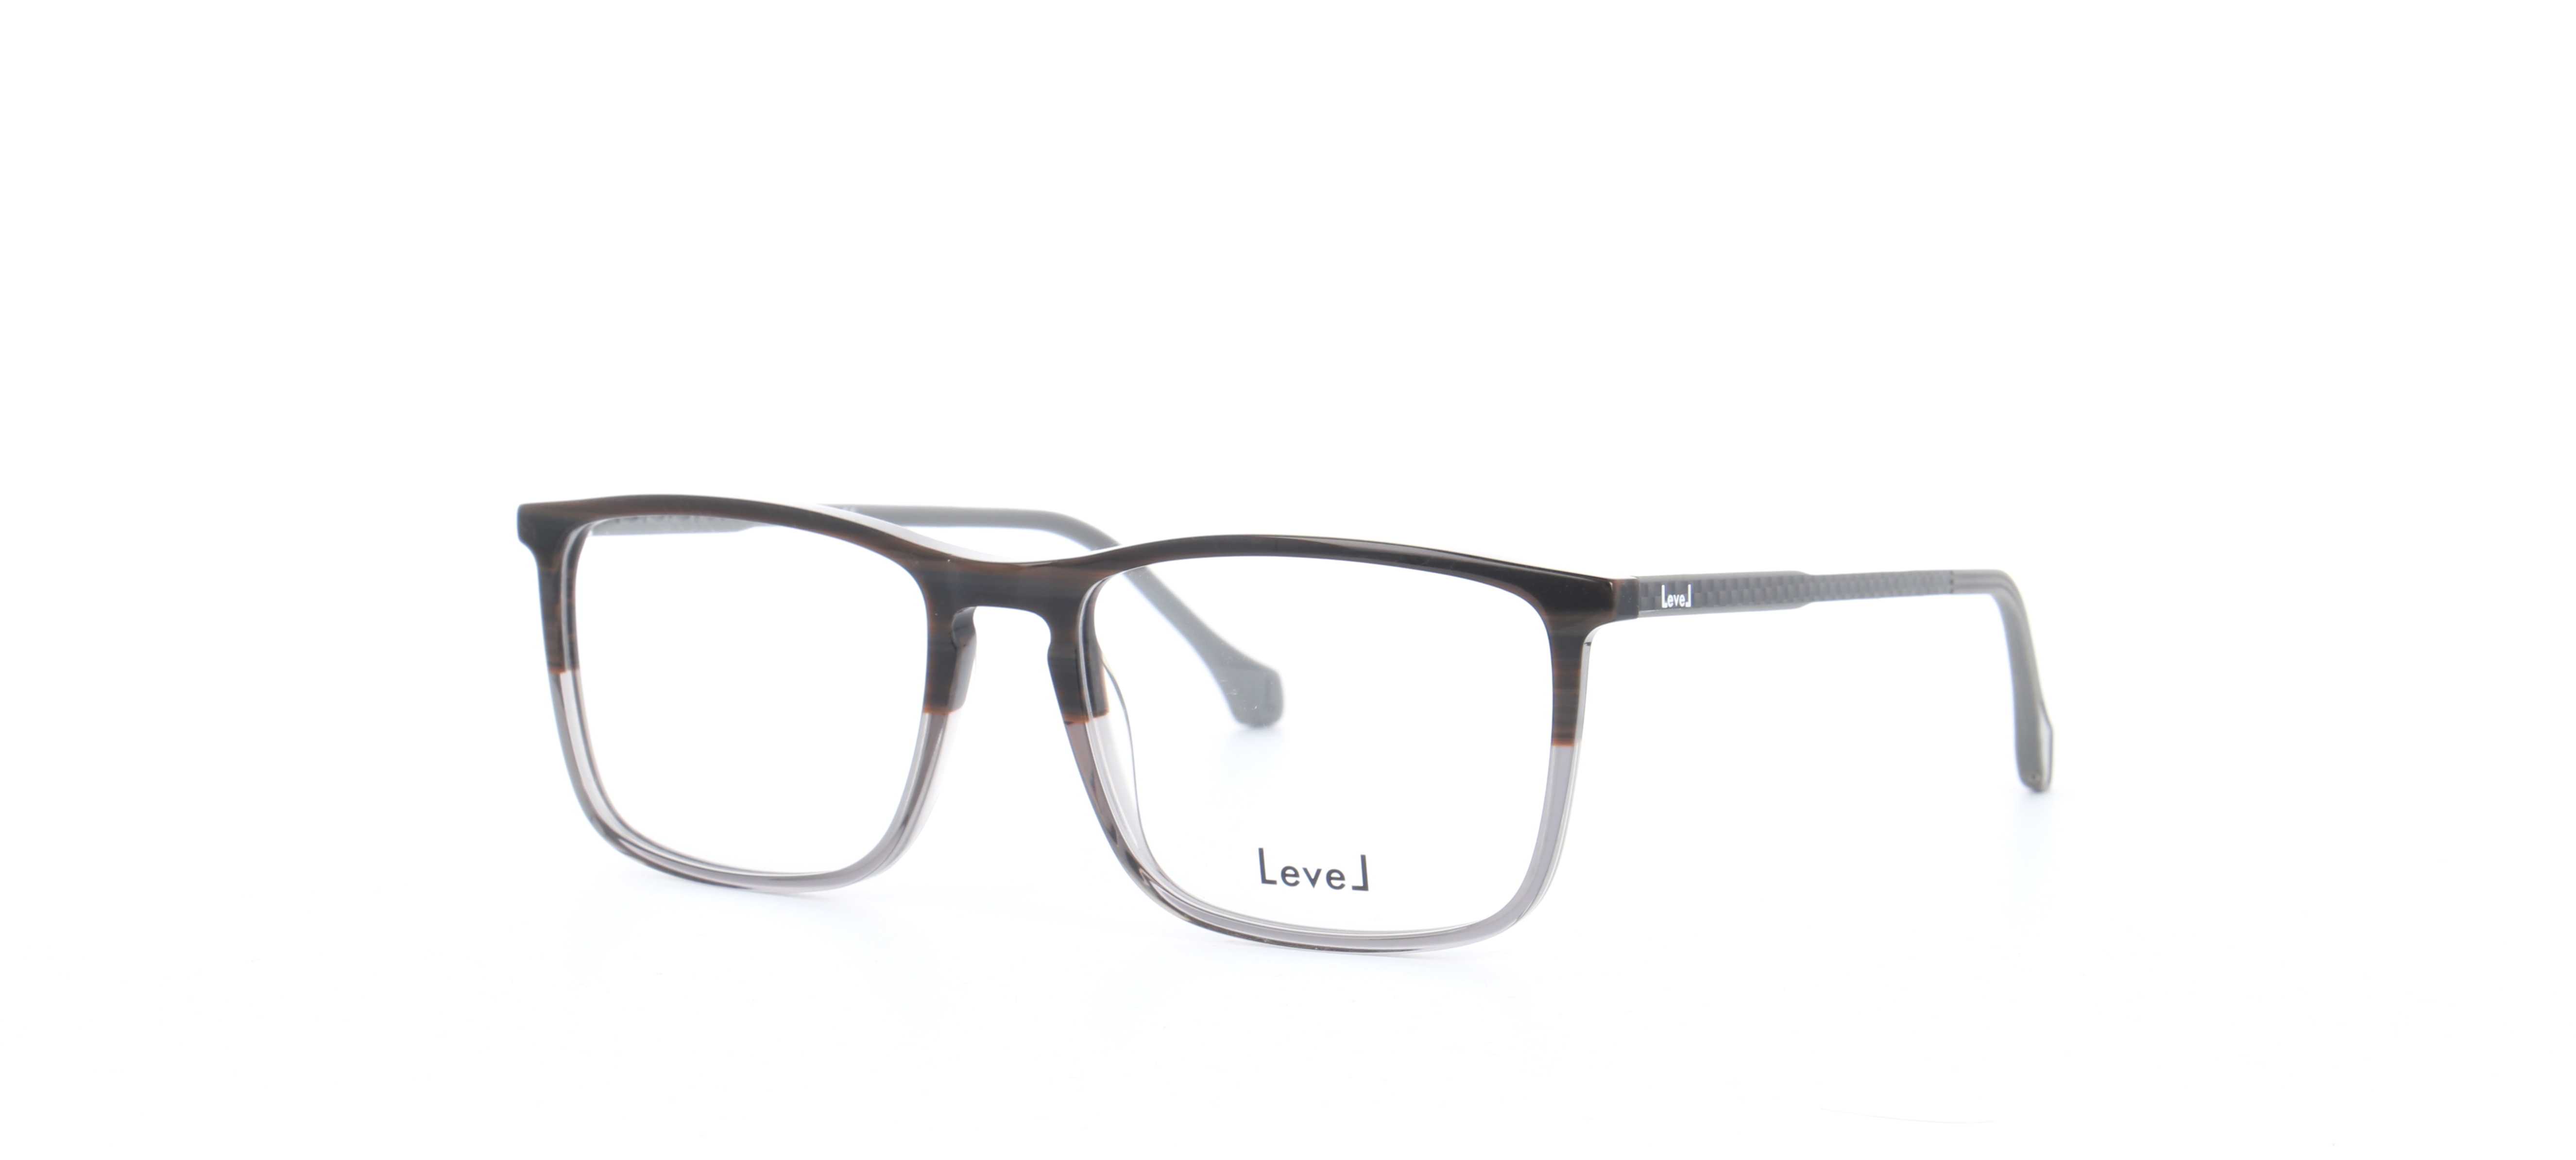 lunettes-de-vue-level-le-2113-nogr-54-17-homme-noir-gris-rectangle